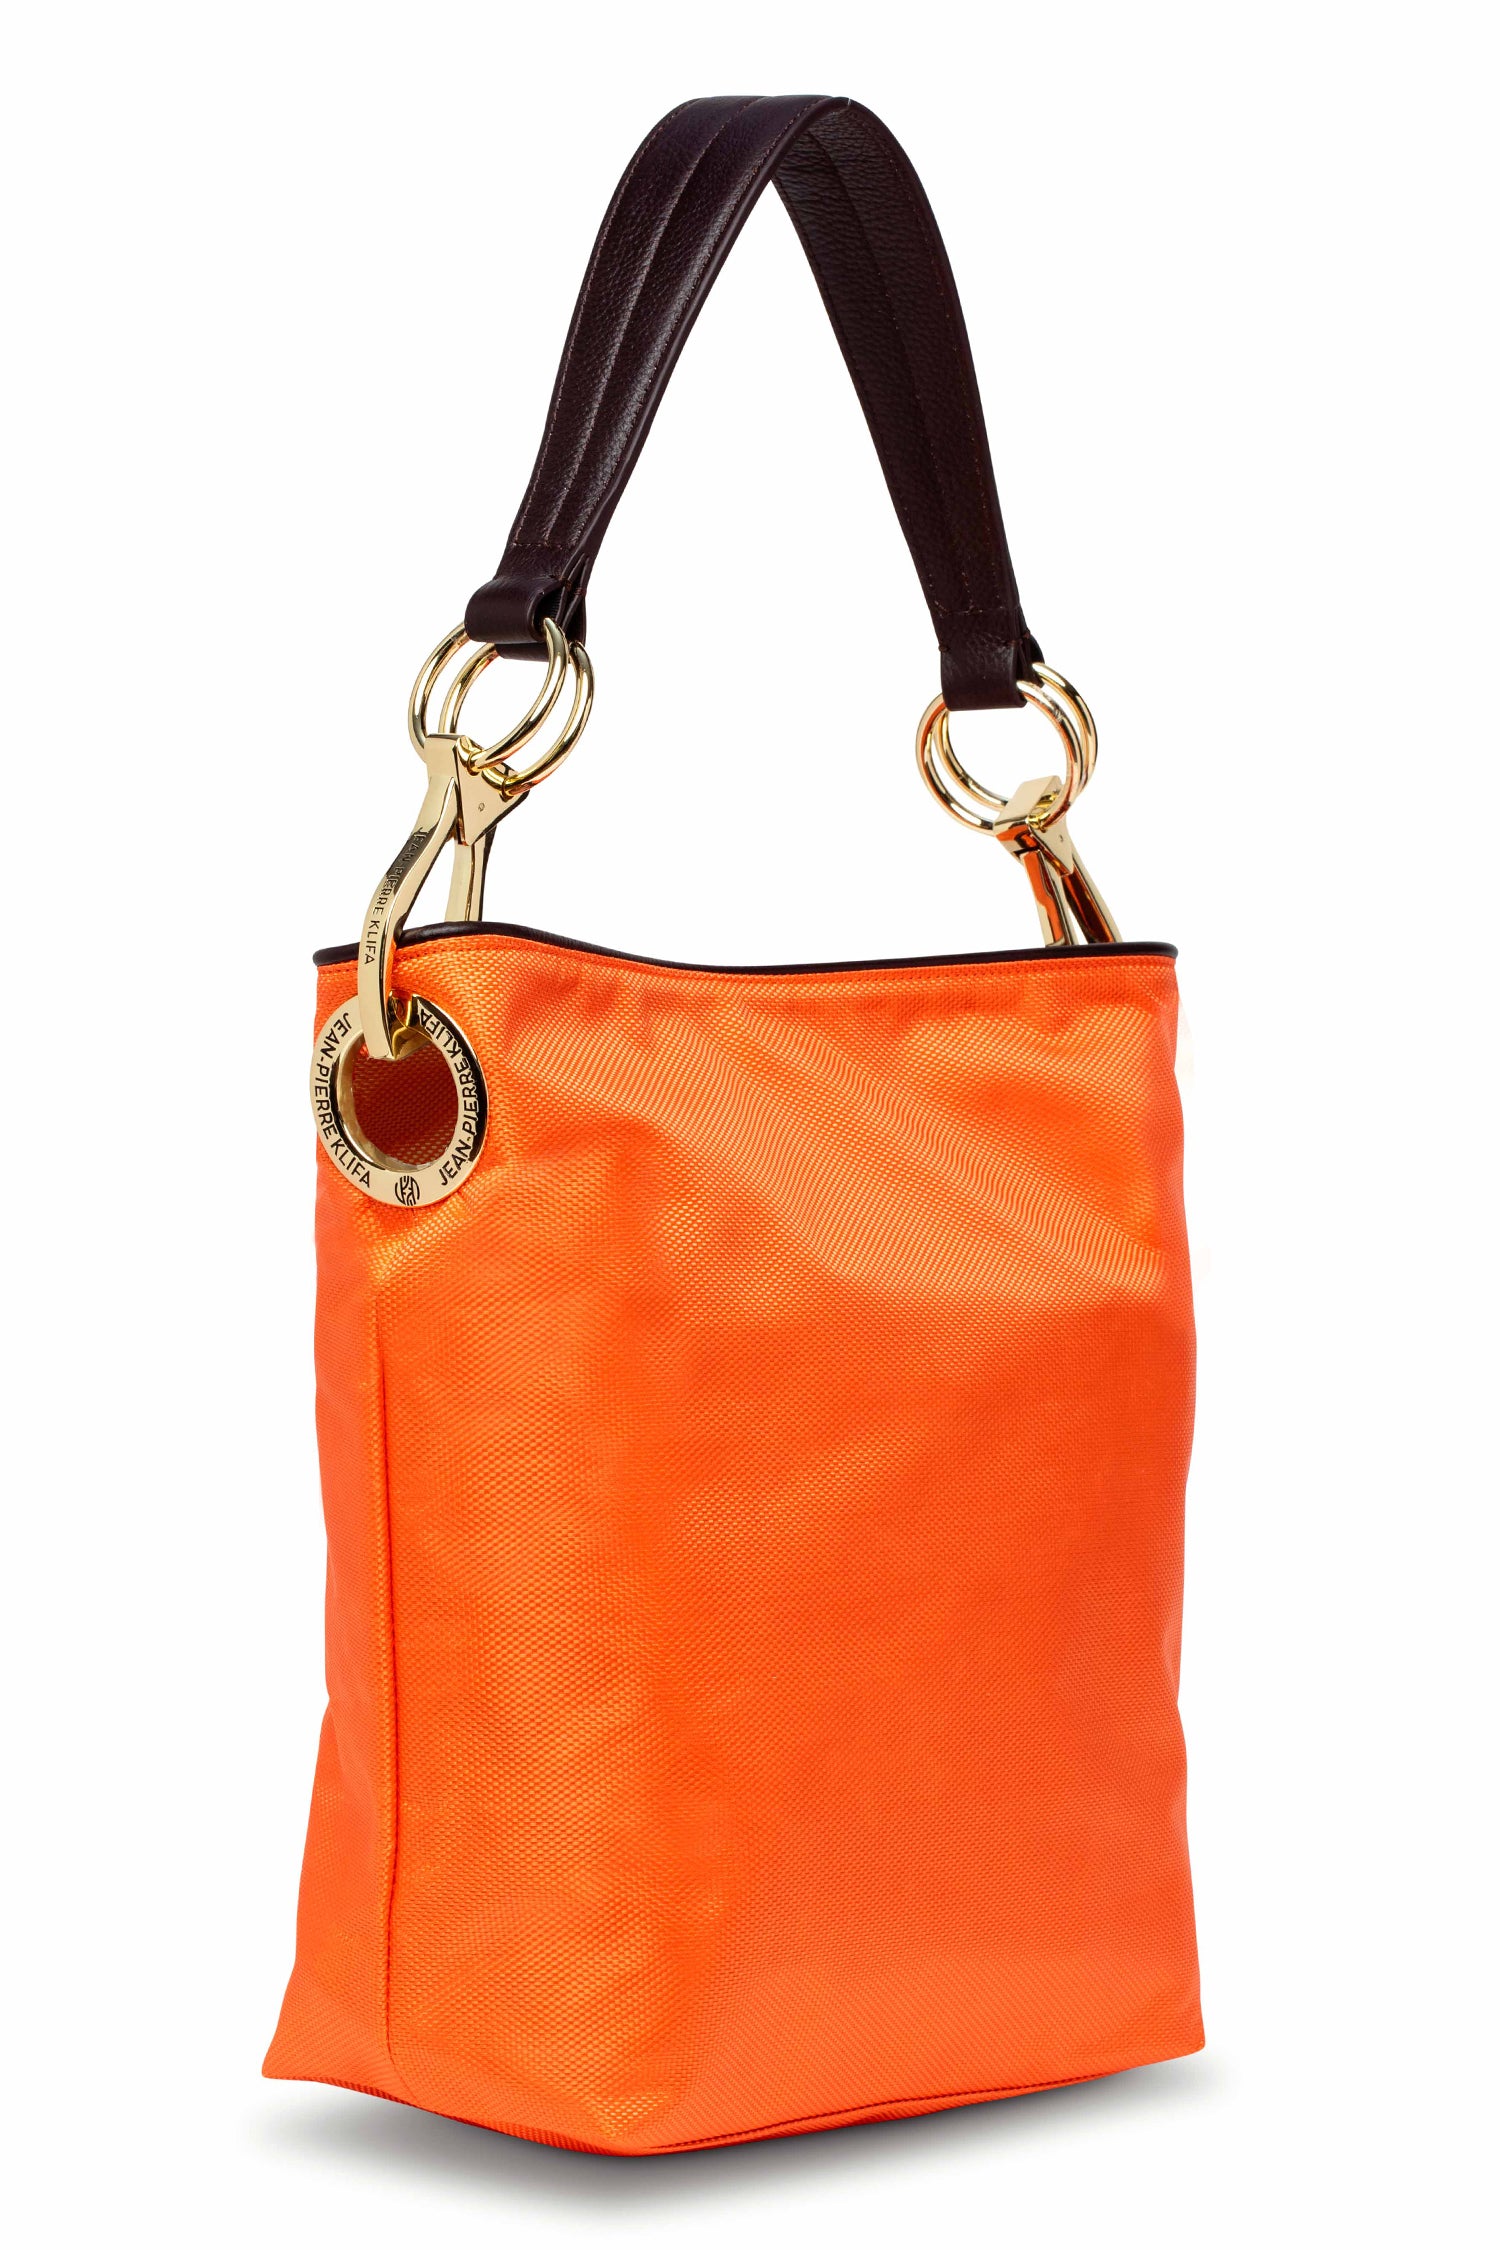 Nylon Bucket Bag Orange Handbag Jean-Pierre Klifa   